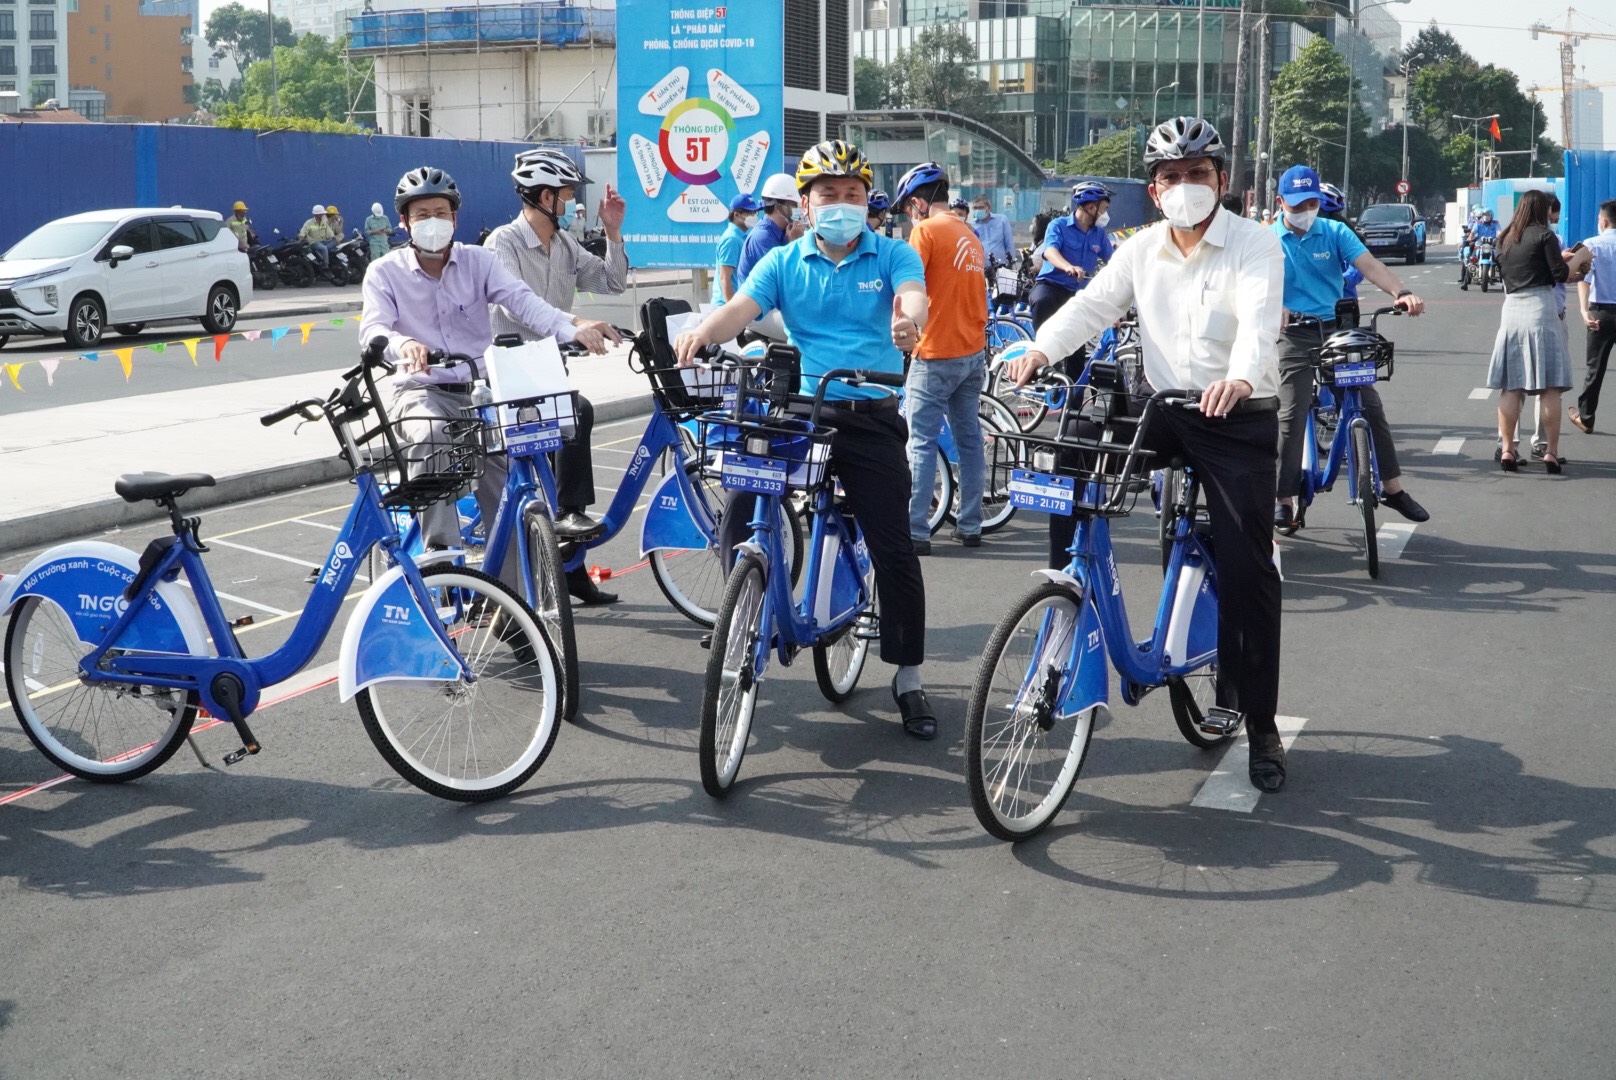 Xe đạp công cộng của Hà Nội là một trong những phương tiện di chuyển tiện lợi, thân thiện với môi trường và đầy thú vị. Hãy xem hình ảnh về xe đạp công cộng này để cảm nhận sự tiện ích và thú vị của nó nhé!